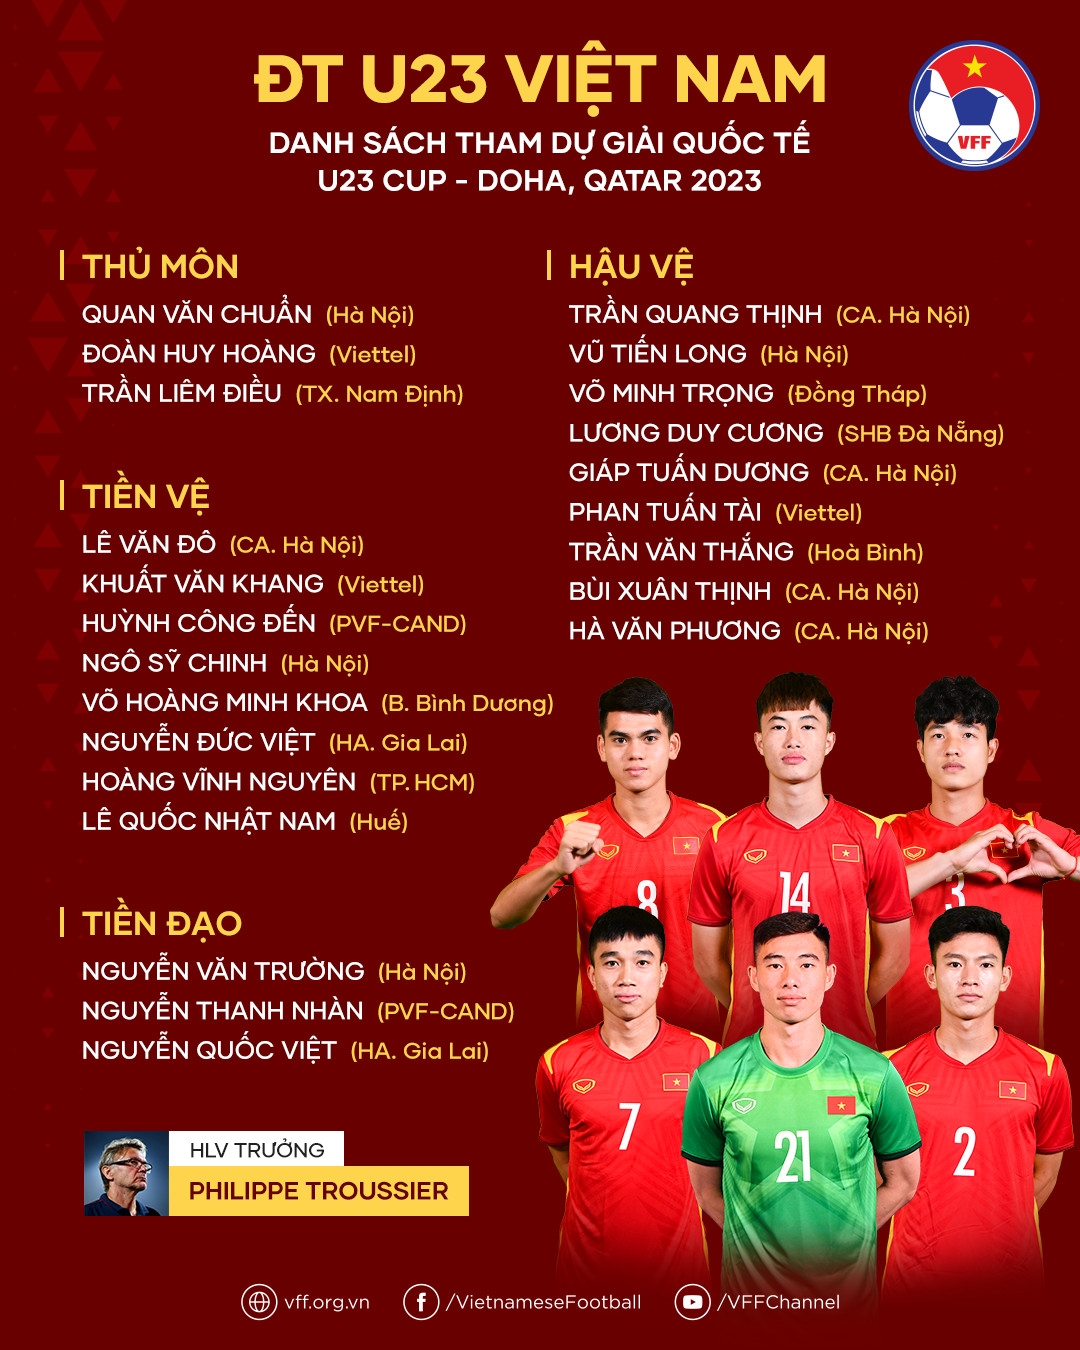 Danh sách Đội tuyển U23 Việt Nam dự giải giao hữu quốc tế tại Qatar - Ảnh: VFF